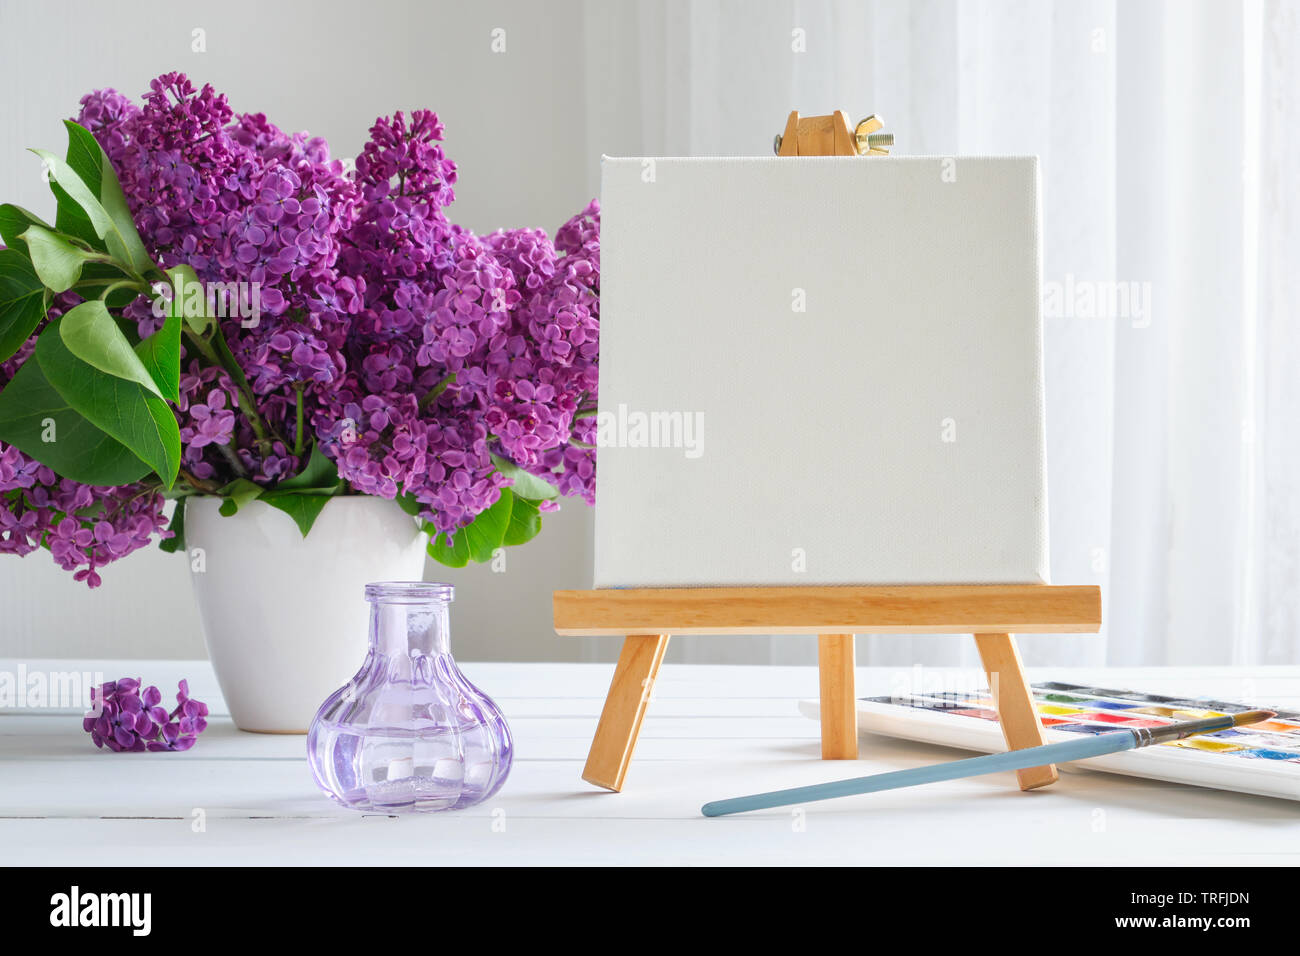 Toile blanche sur les peintures de chevalet, aquarelle, pinceau pour peindre et lilas fleurs sur table. Banque D'Images